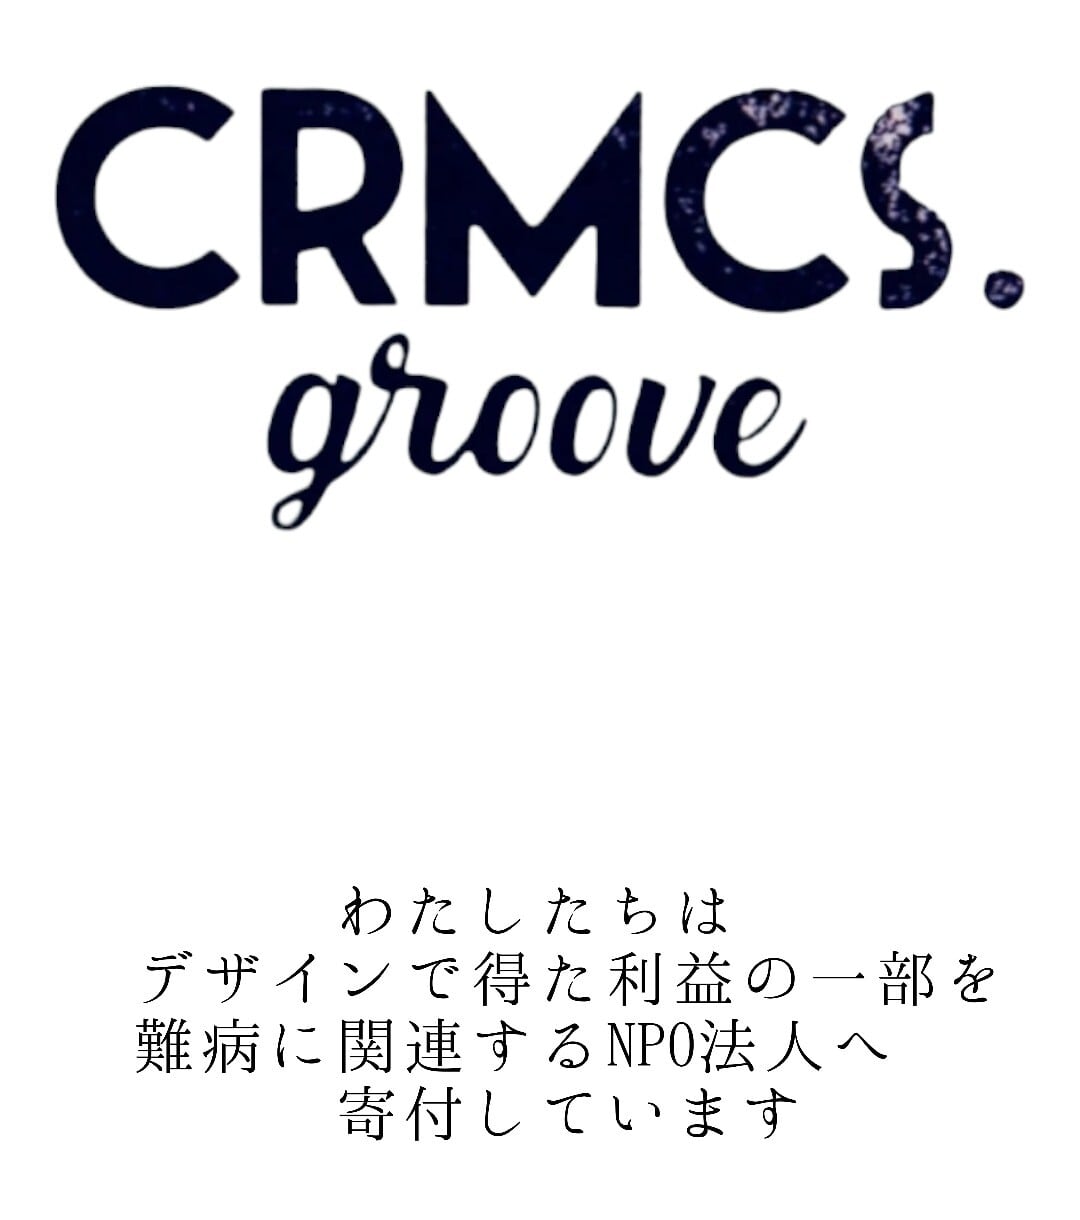 CRMCS.groove